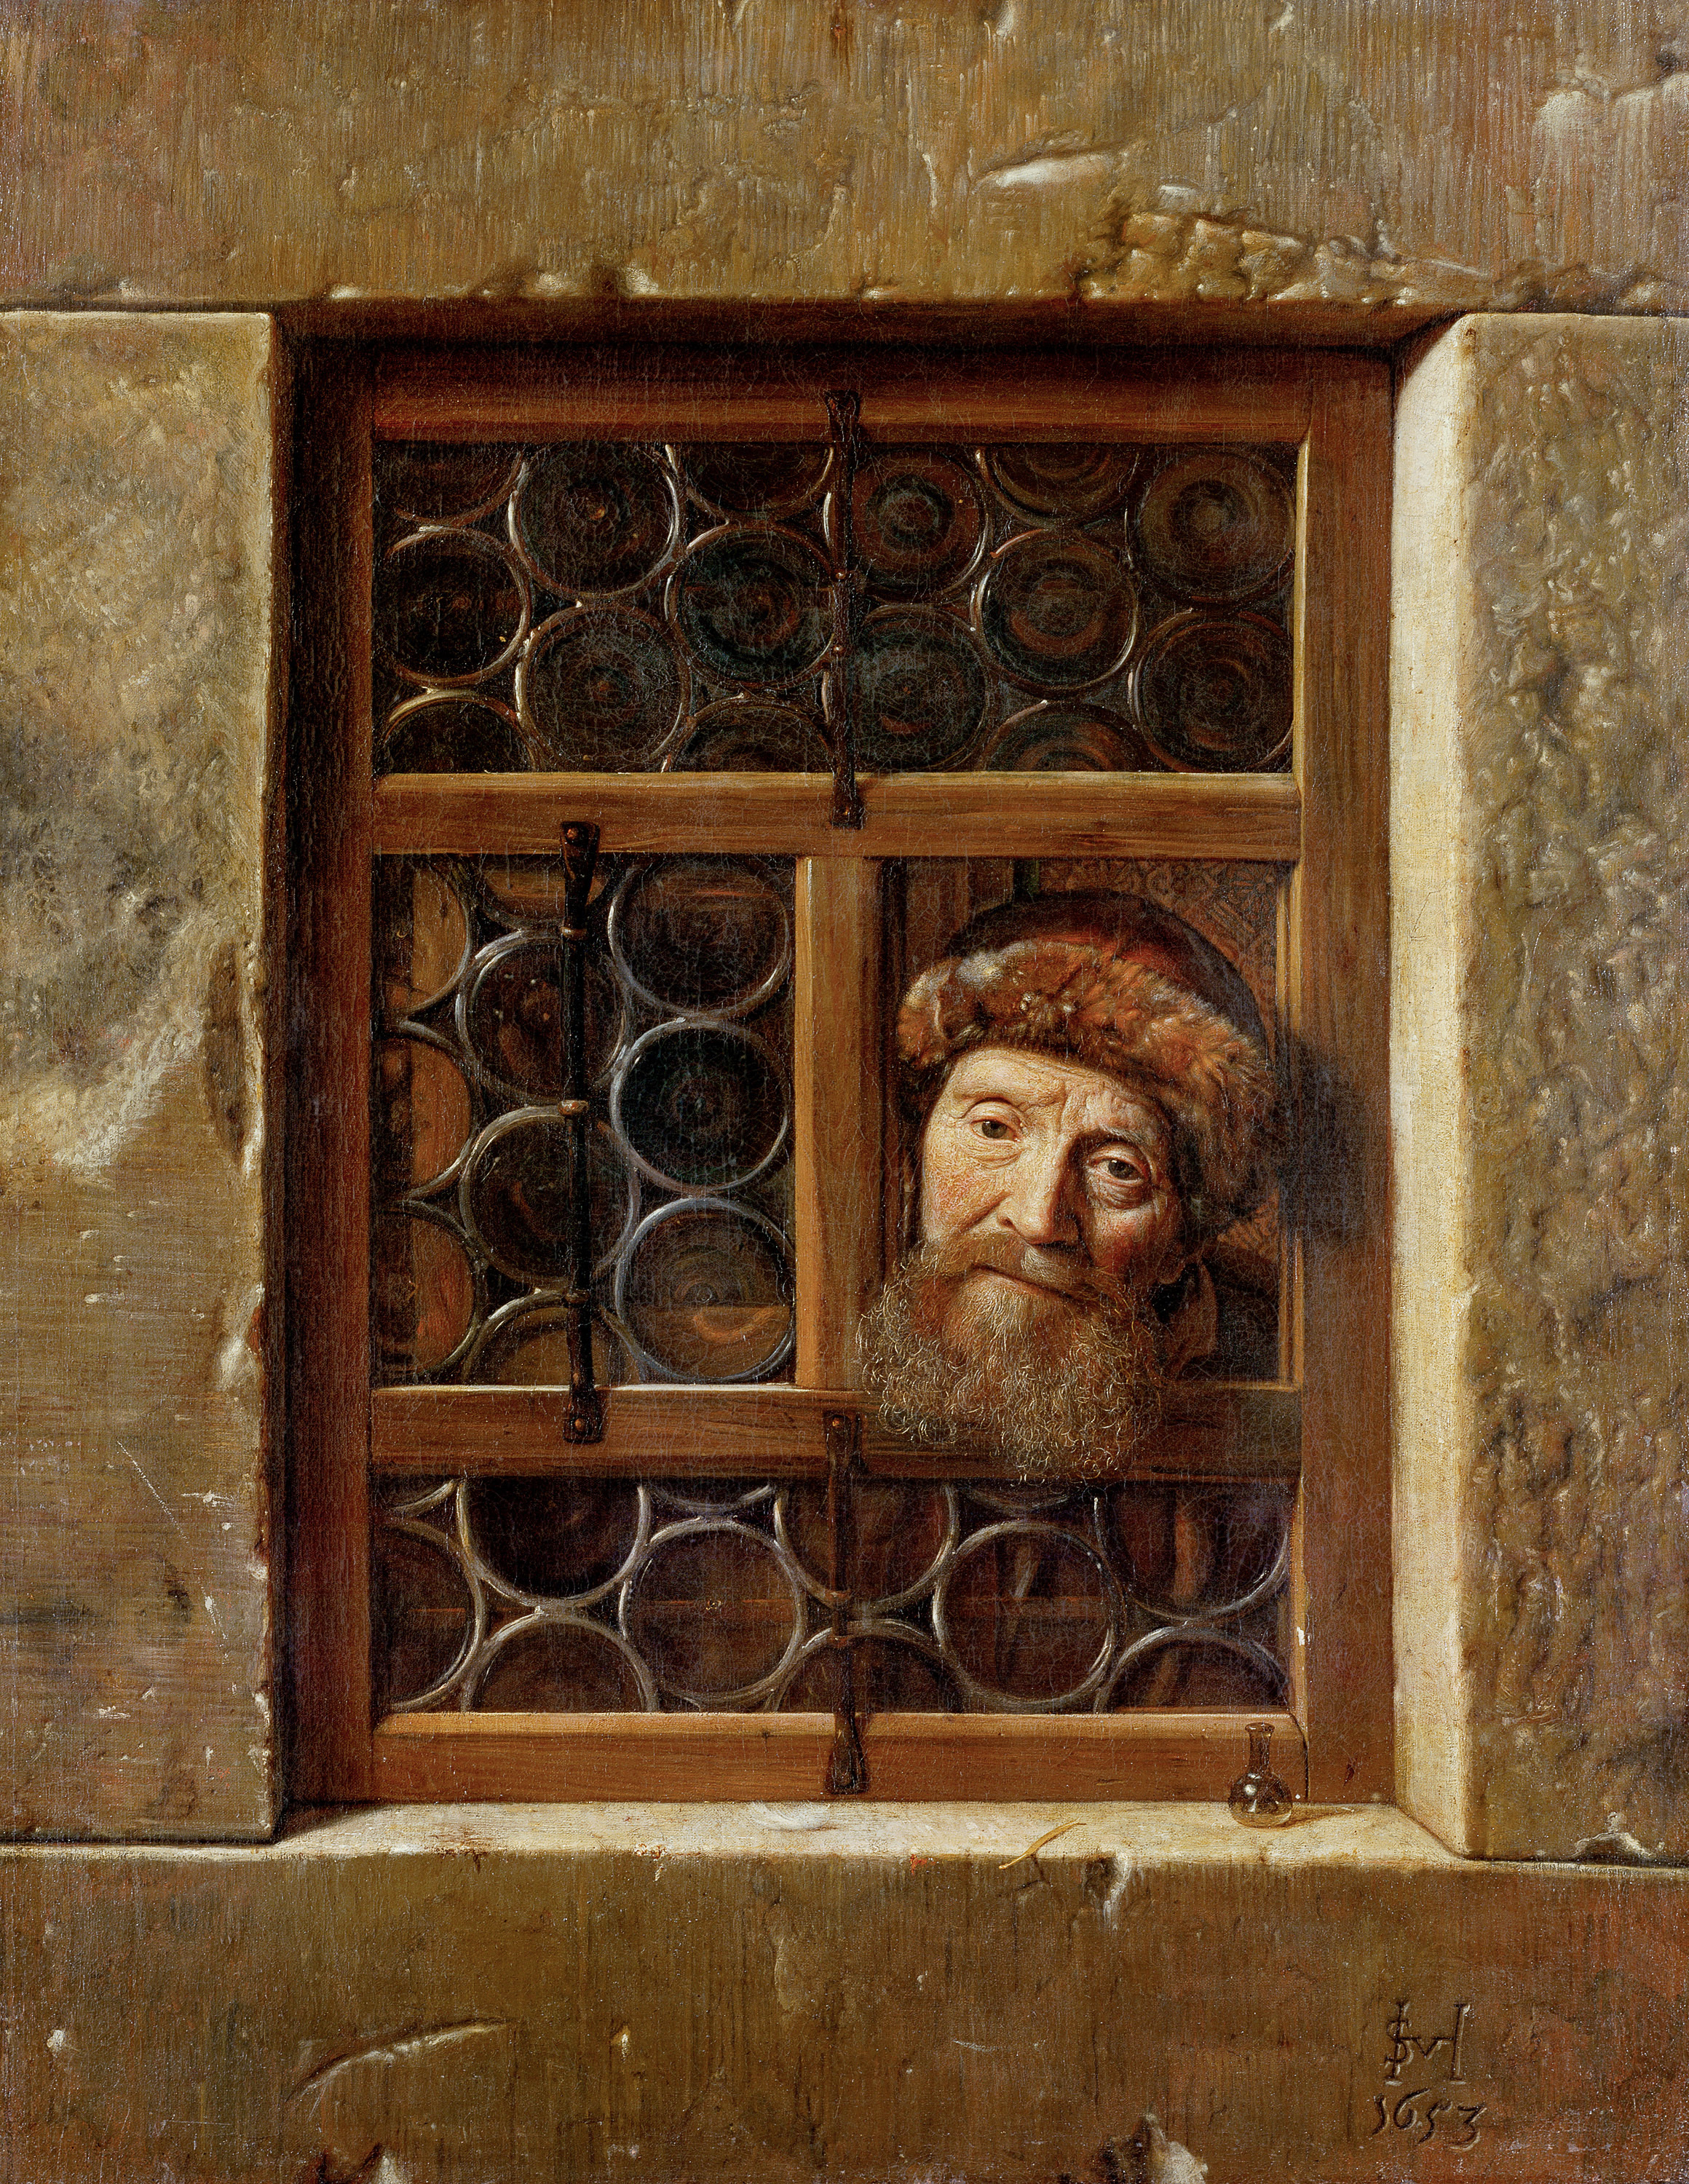 Oude man bij het raam by Samuel van Hoogstraten - 1653 - 111 cm × 86,5 cm Kunsthistorisches Museum